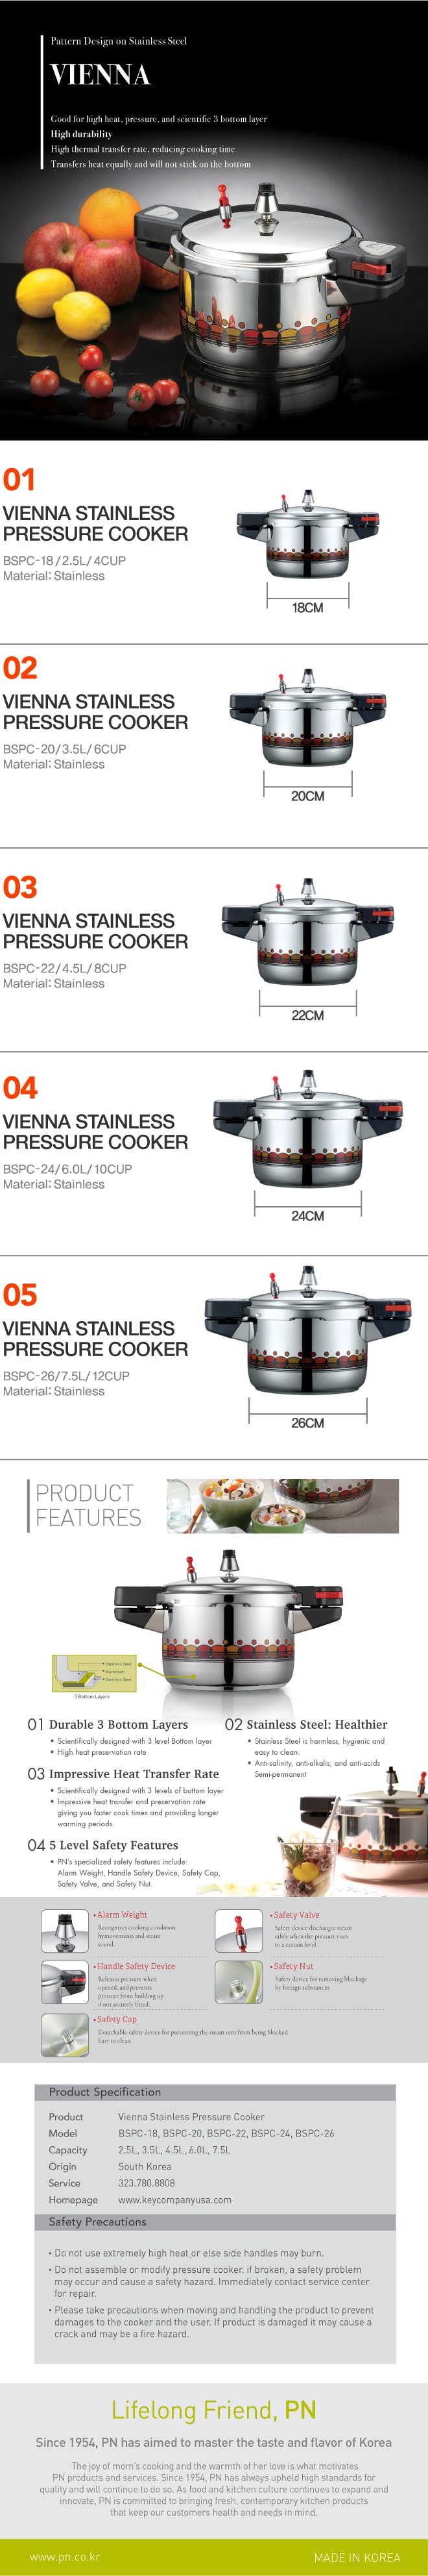 Vienna Pressure Cooker 2.5L / 4 Cups BSPC-18C